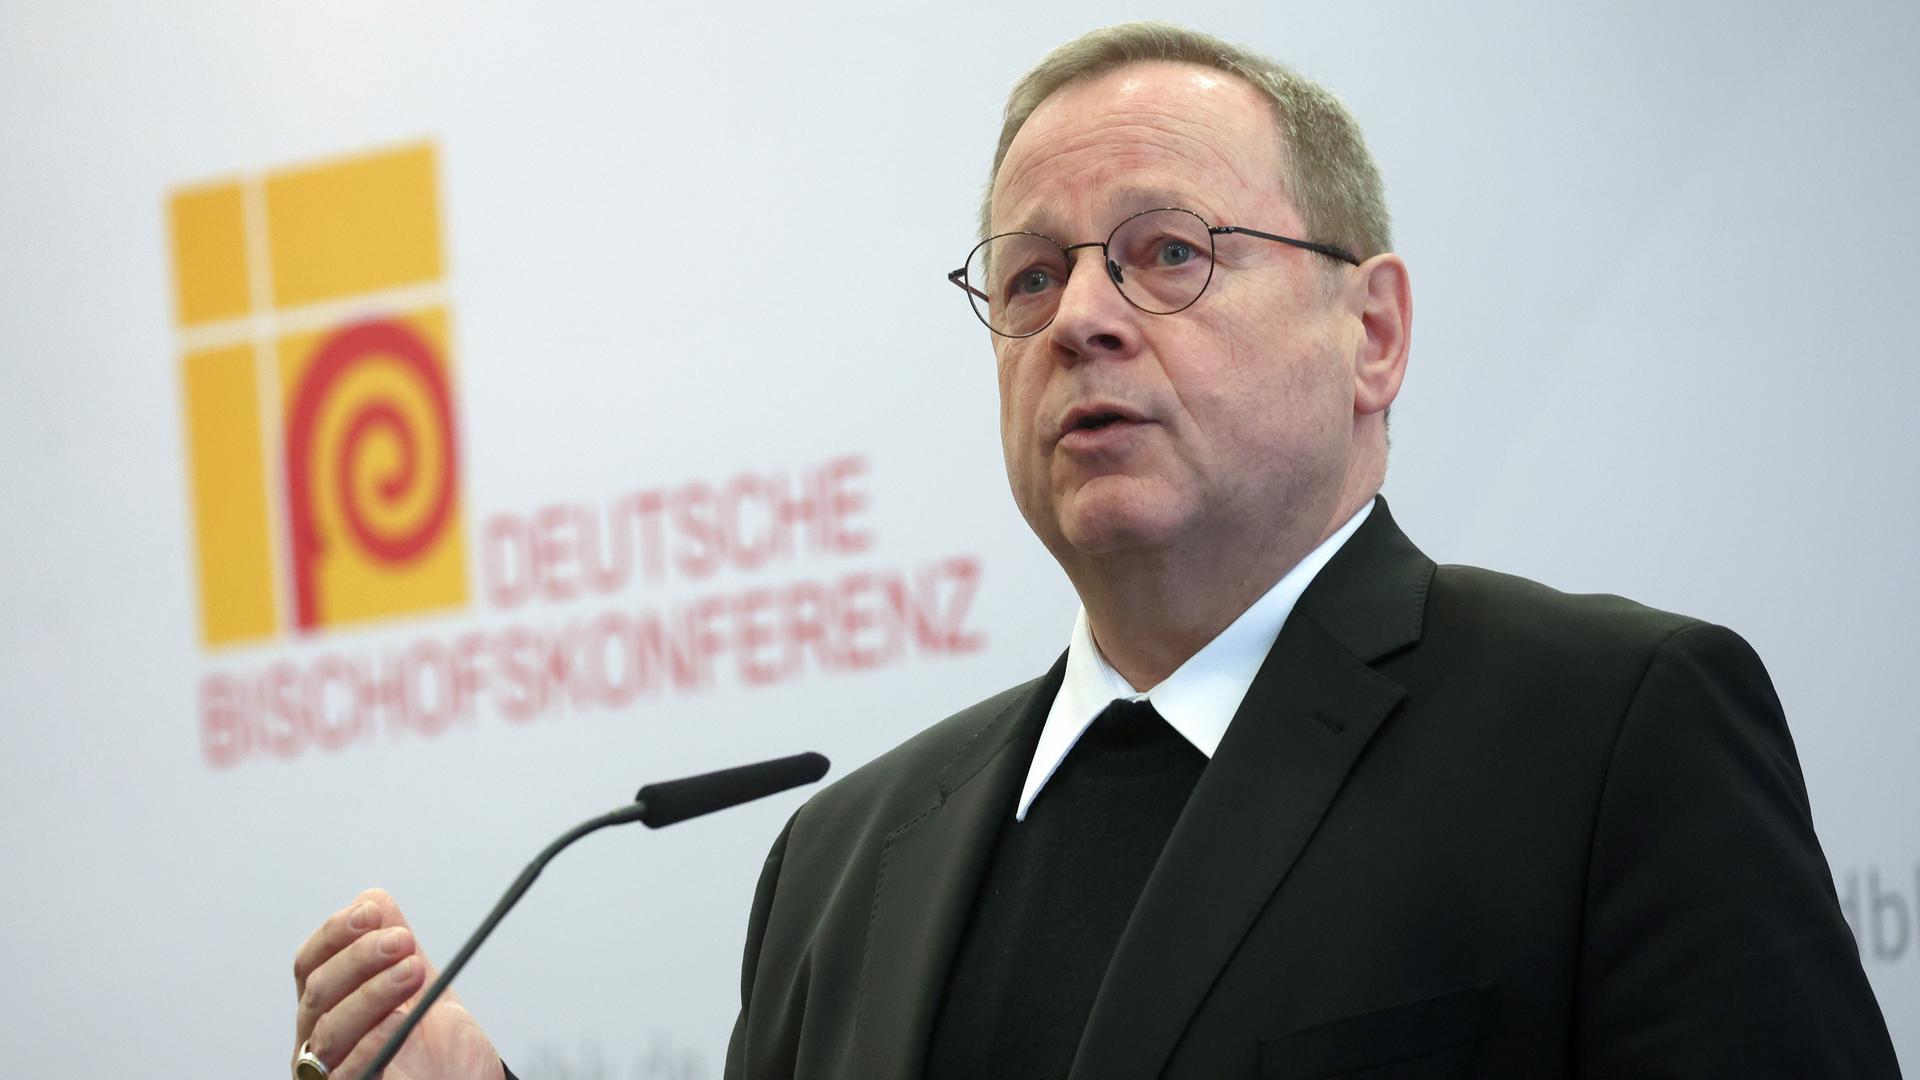 Bischof Georg Bätzing, Vorsitzender der Deutschen Bischofskonferenz, spricht bei einer Pressekonferenz.